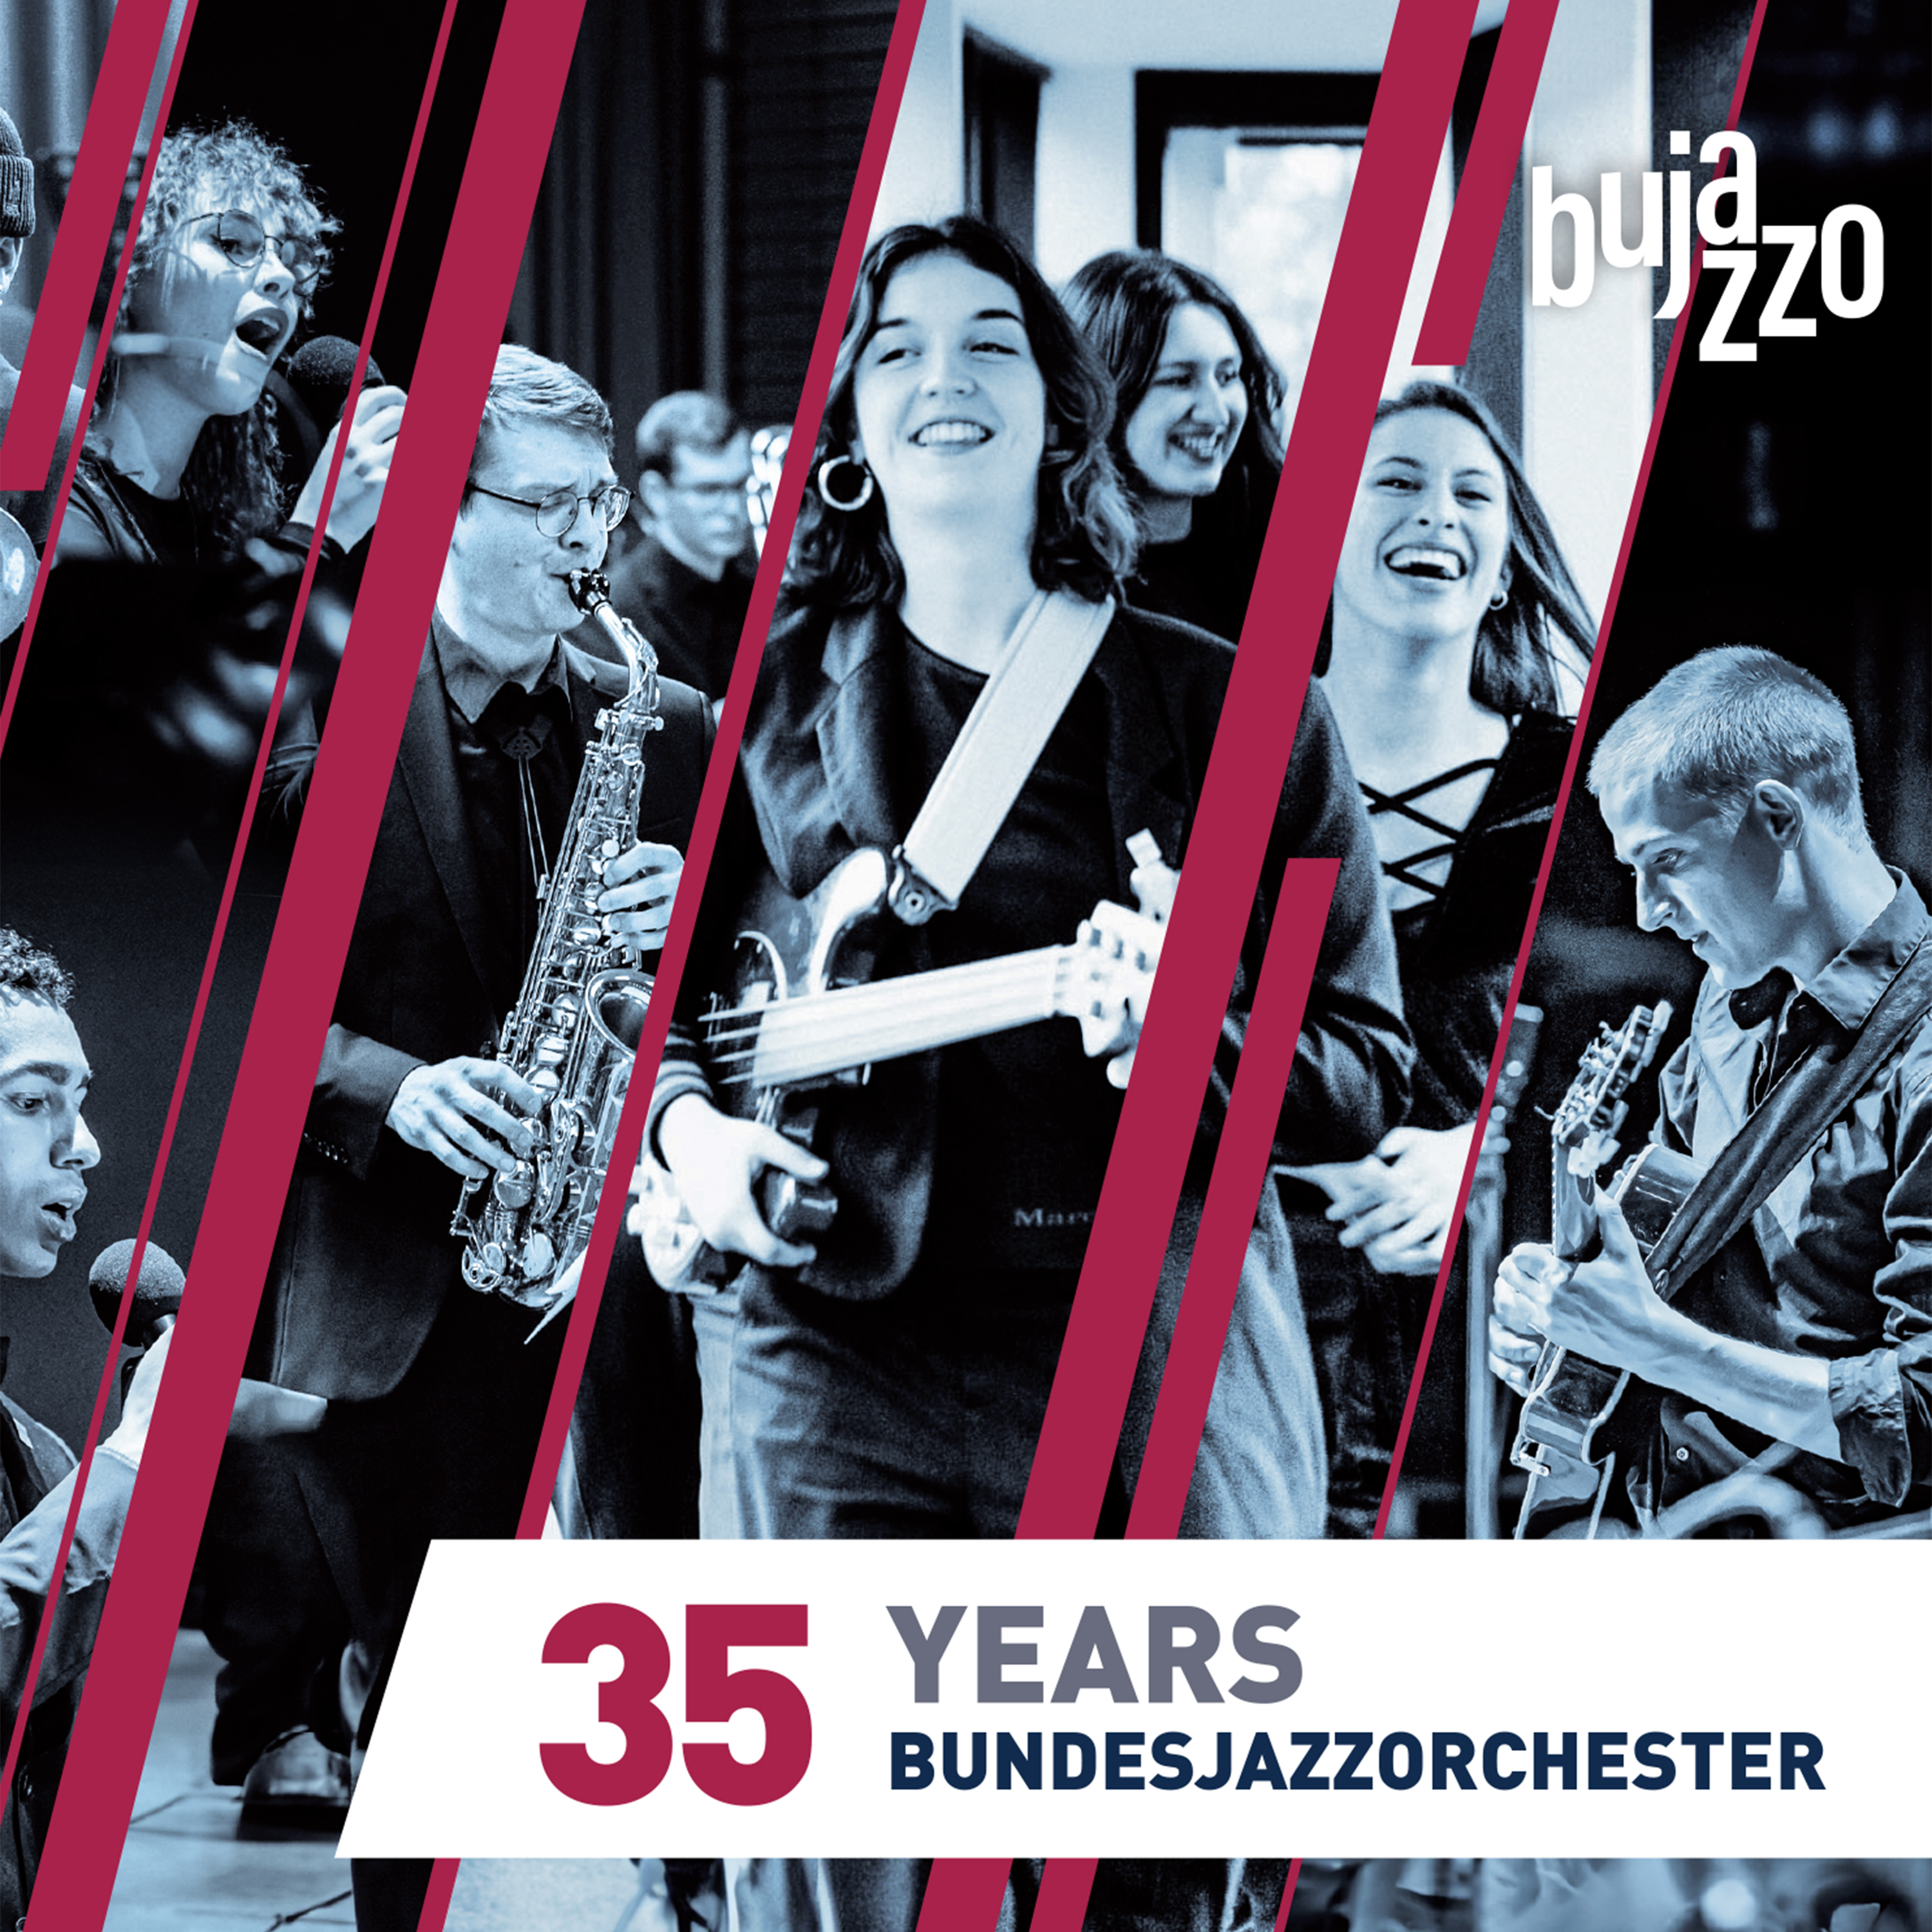 BUJAZZO - 35 Years - Bundesjazzorchester cover 